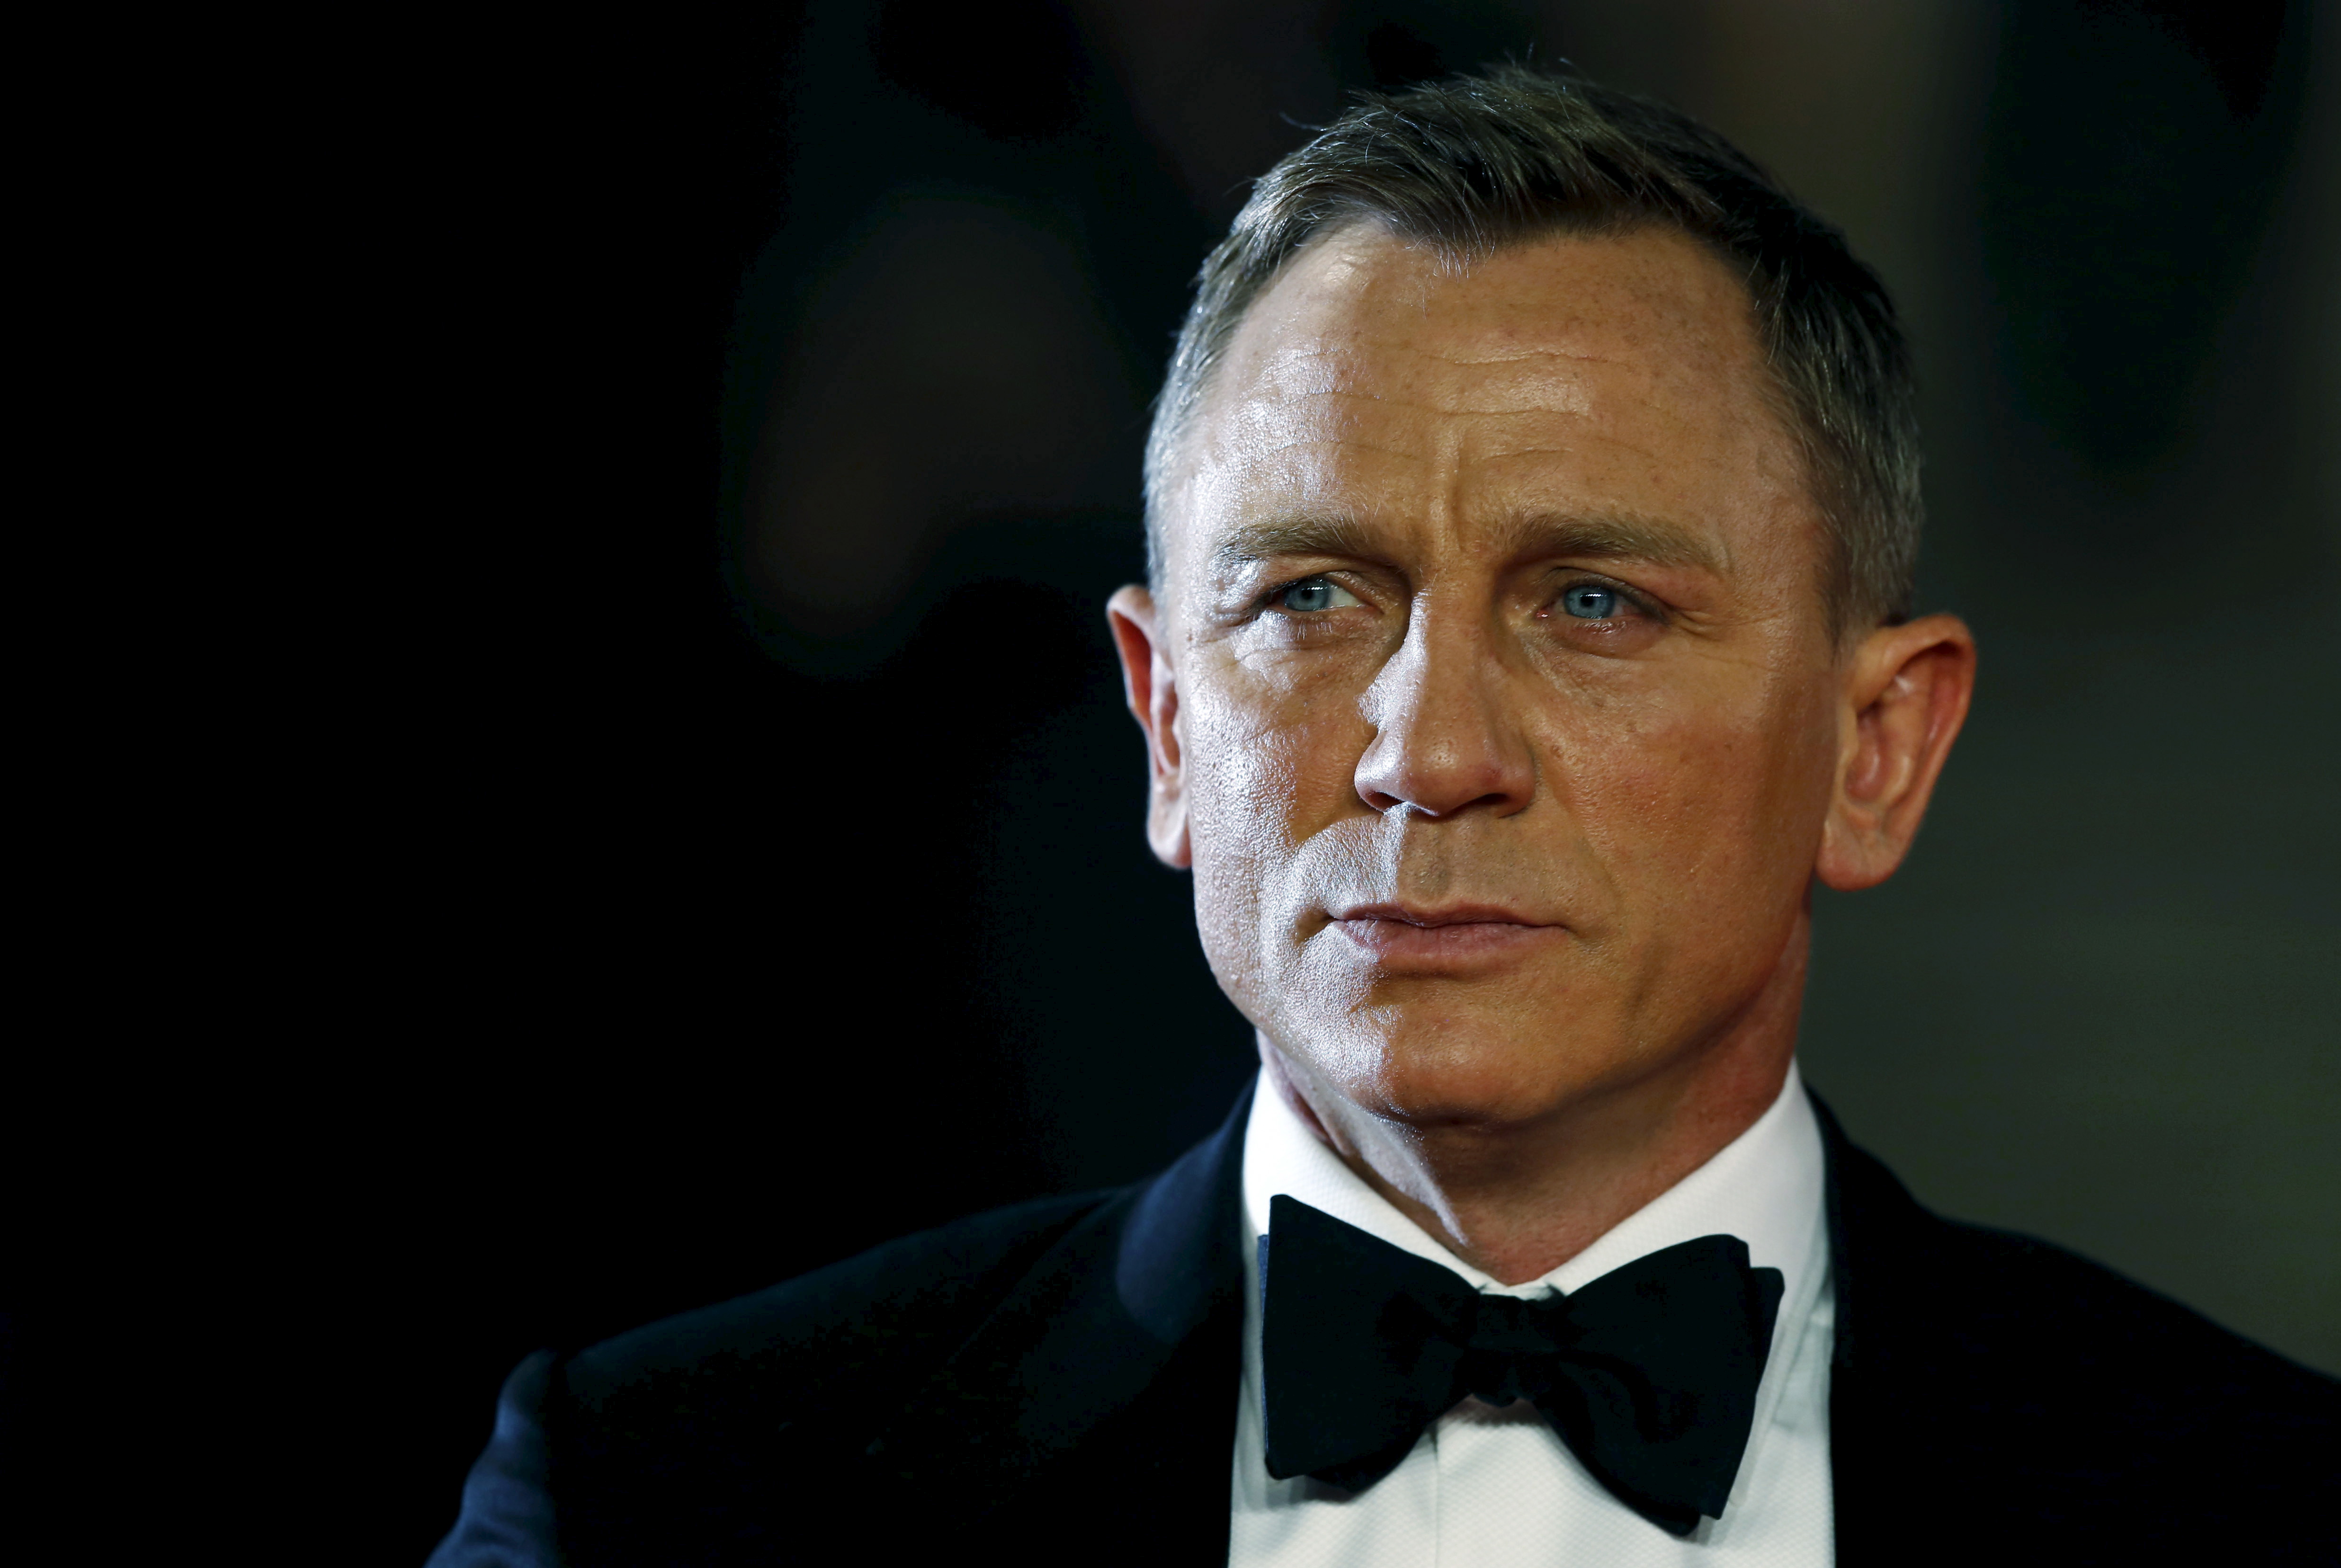 De la ficción a la realidad: Daniel Craig, “a la altura” de James Bond 69 años después